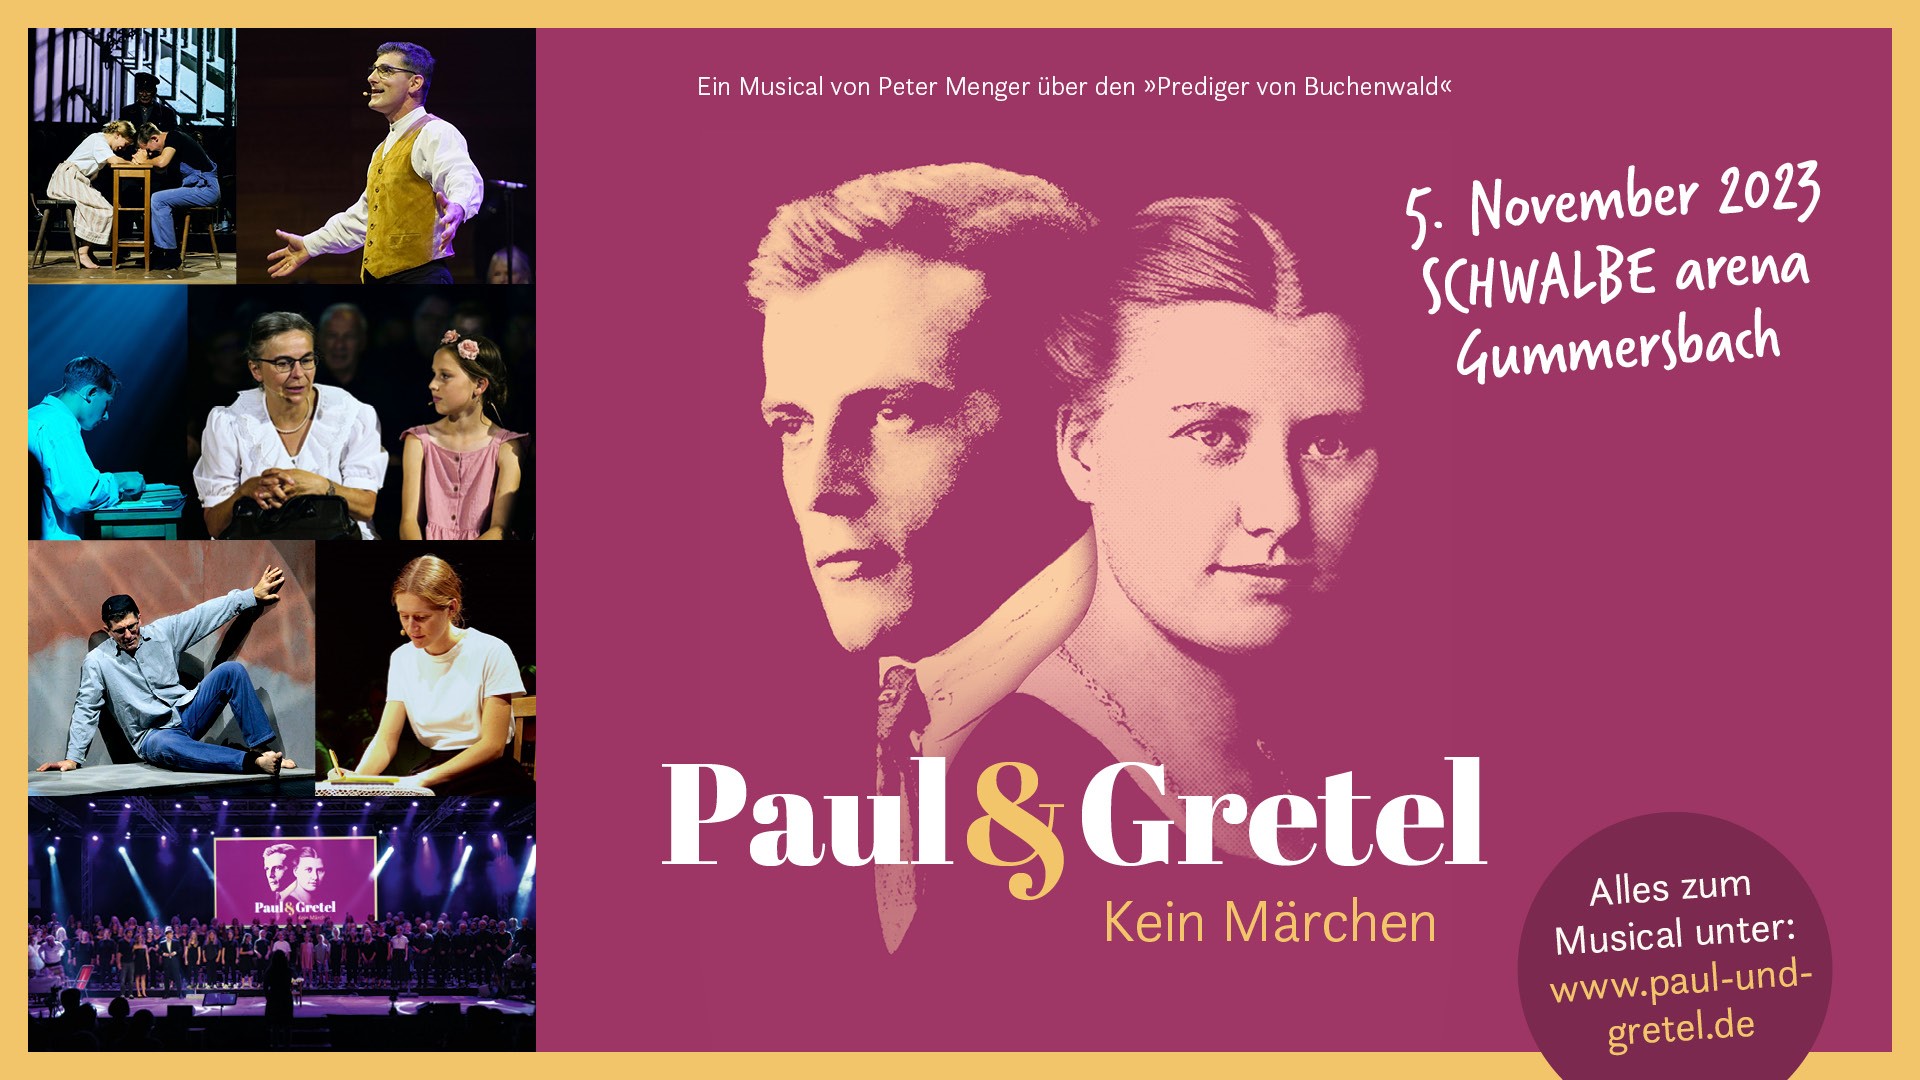 SCHWALBE arena |Paul & Gretel - Kein Märchen